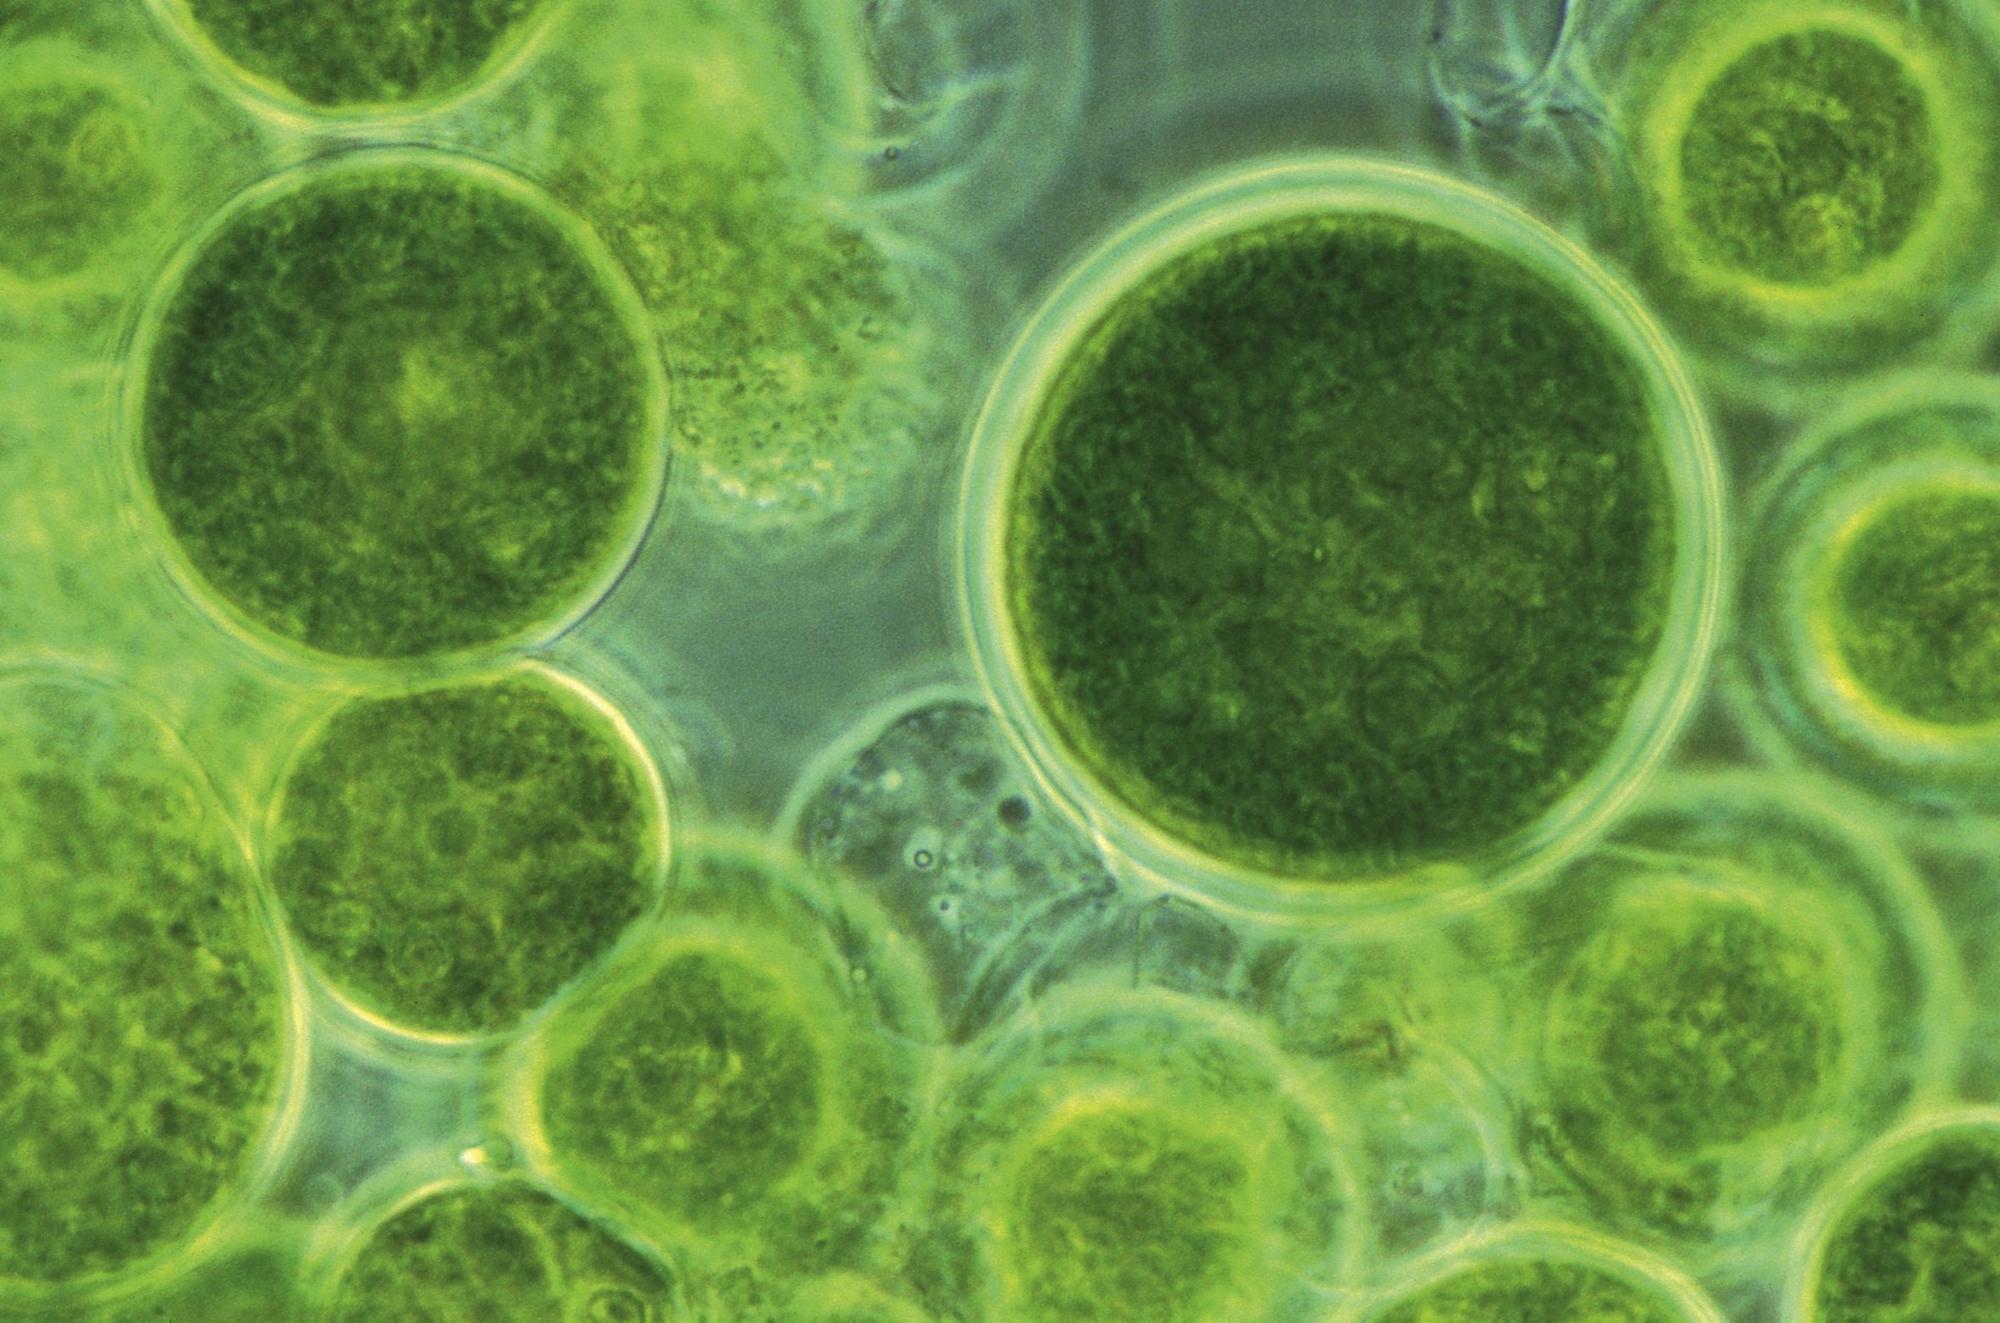 Mikroalge Haematococcus pluvialis unter dem Mikroskop